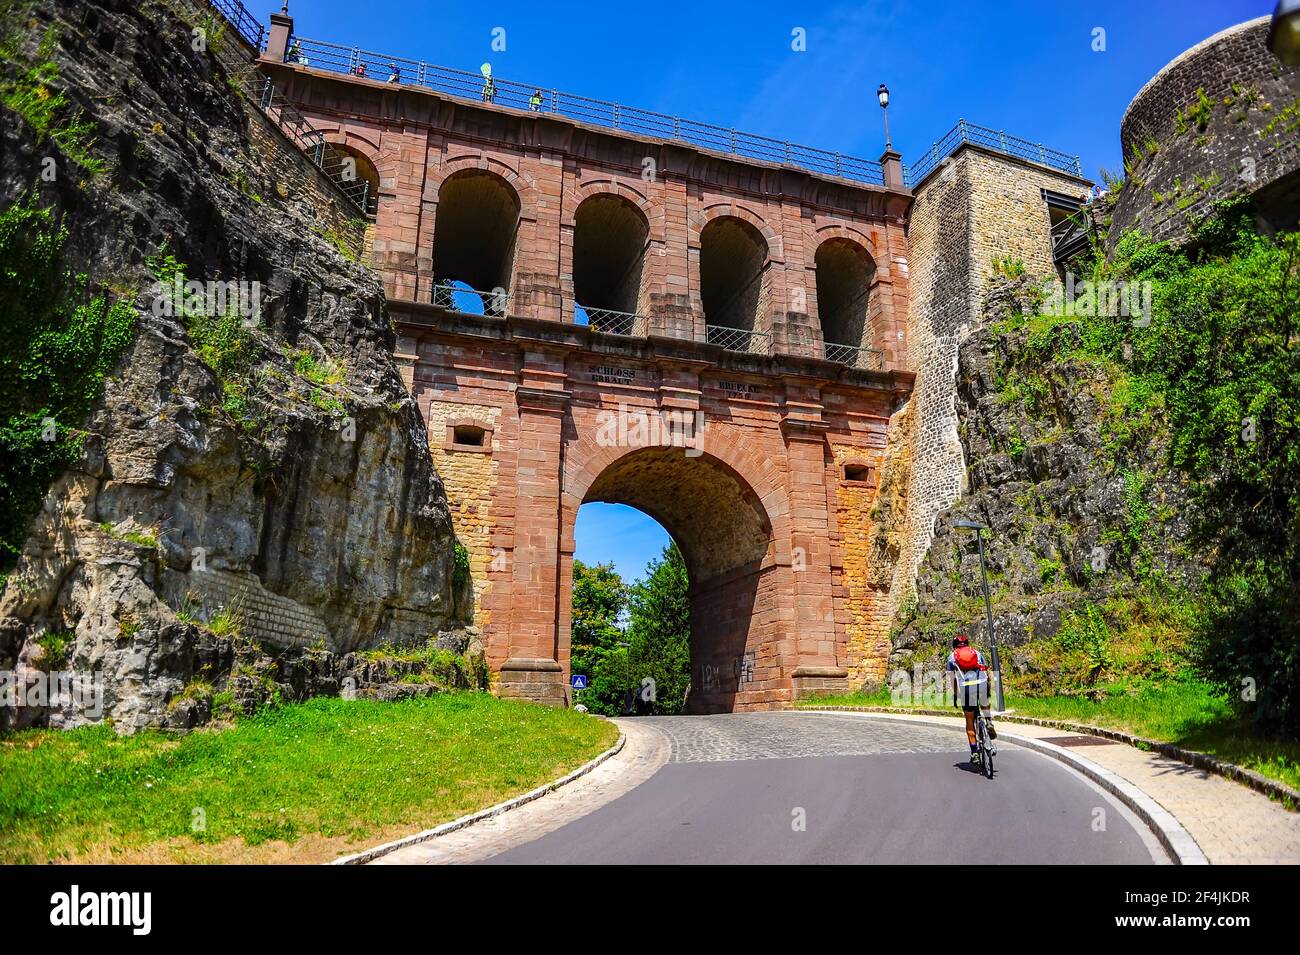 Luxemburg-Stadt, Luxemburg - 16. Juli 2019: Die berühmte Burgbrücke in der Nähe der Bock Casemates in Luxemburg-Stadt, Europa Stockfoto